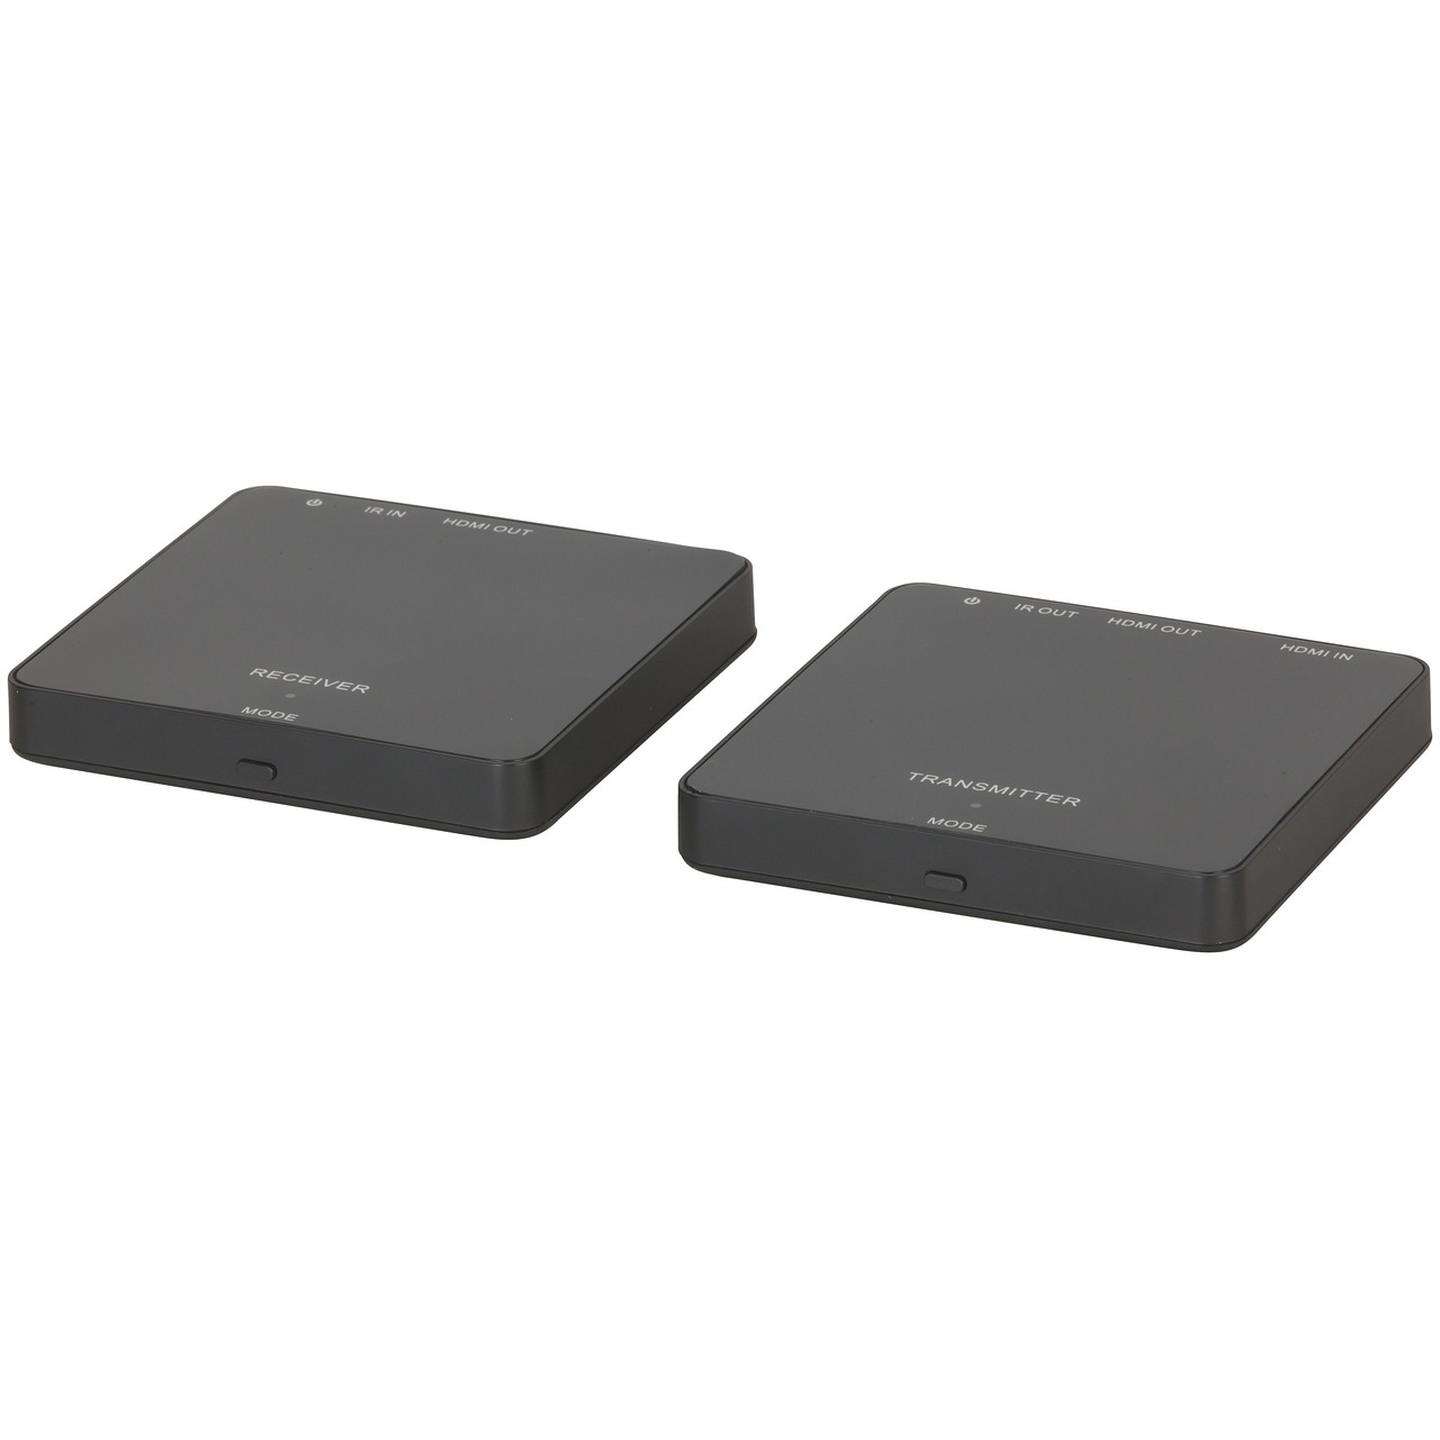 Wireless 5.8GHz 1080p HDMI AV Sender/Receiver Kit